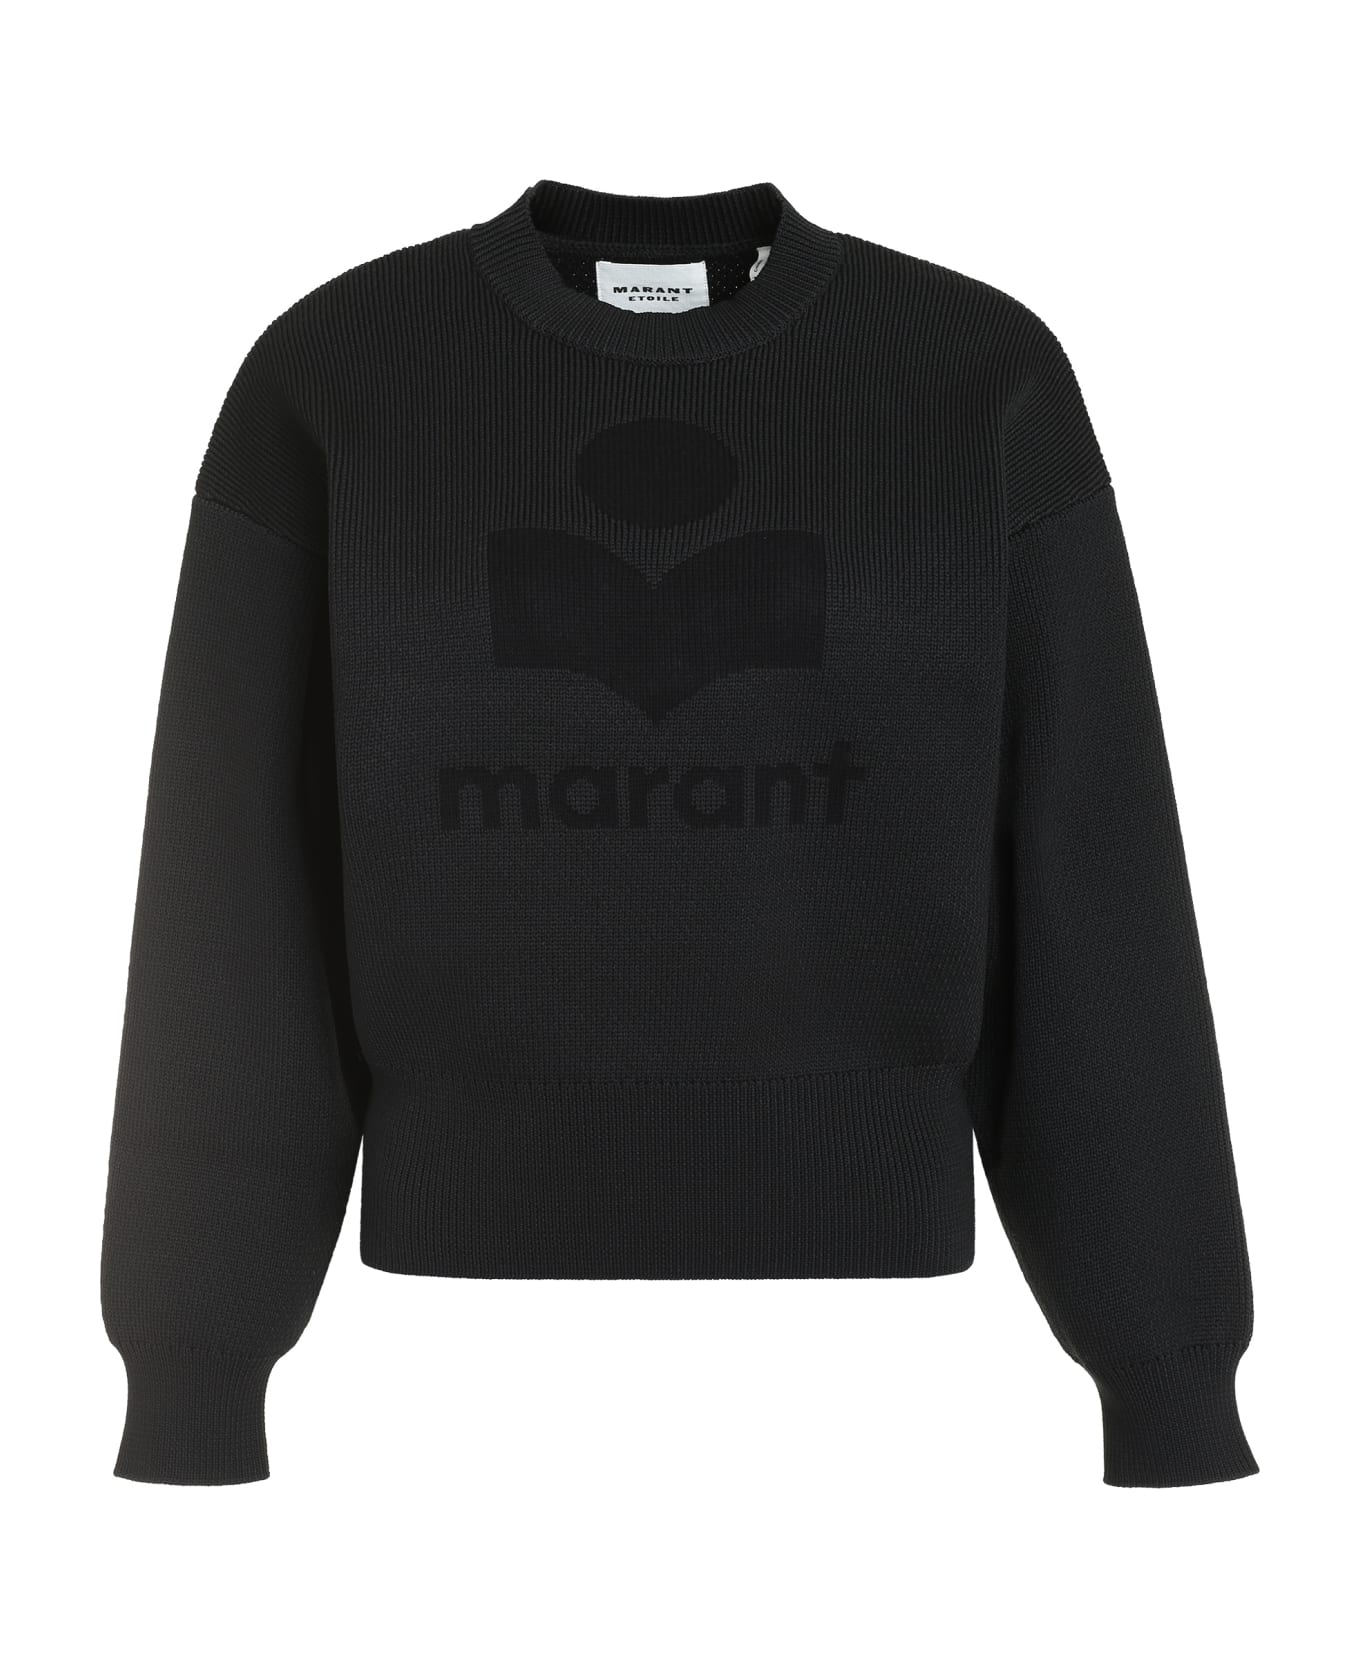 Marant Étoile Ailys Cotton Blend Crew-neck Sweater - black